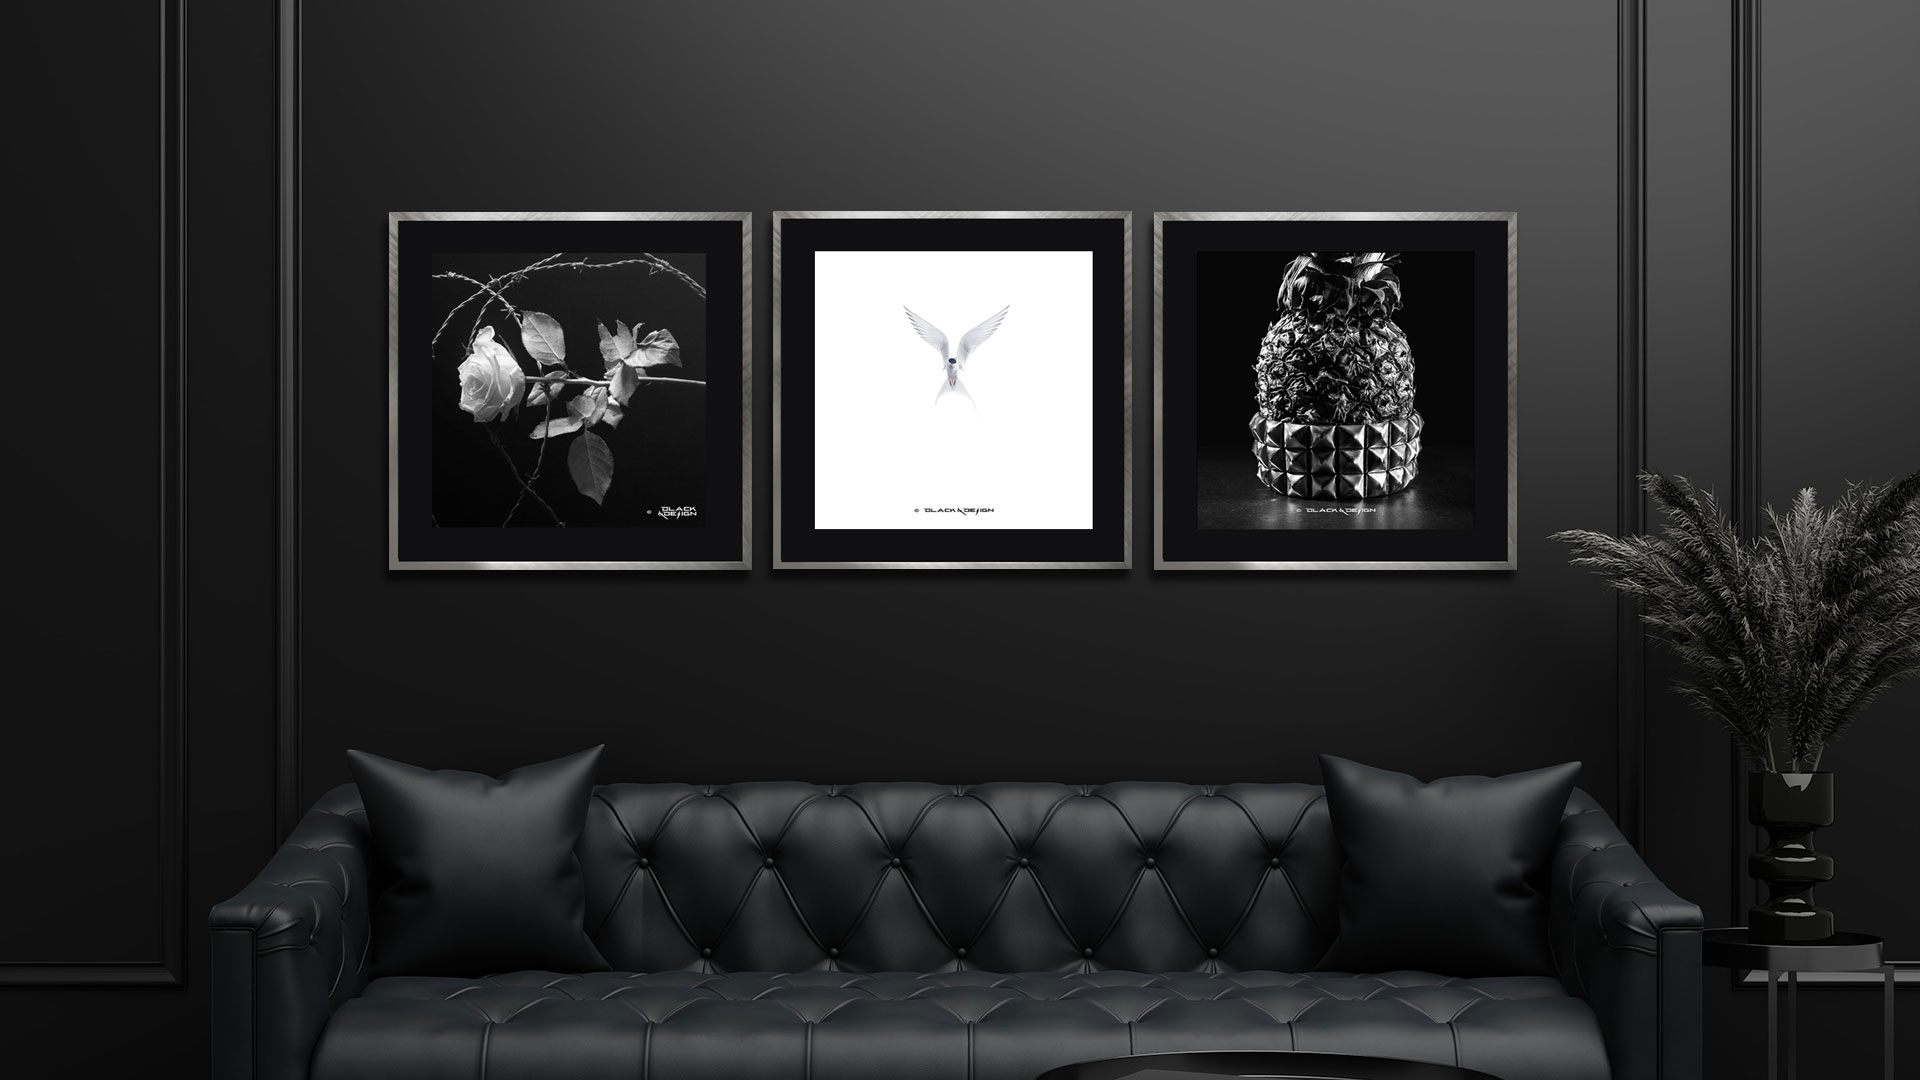 Fotovägg i mörk inredning med kvadratiska motiv i svartvitt från Black & Design.